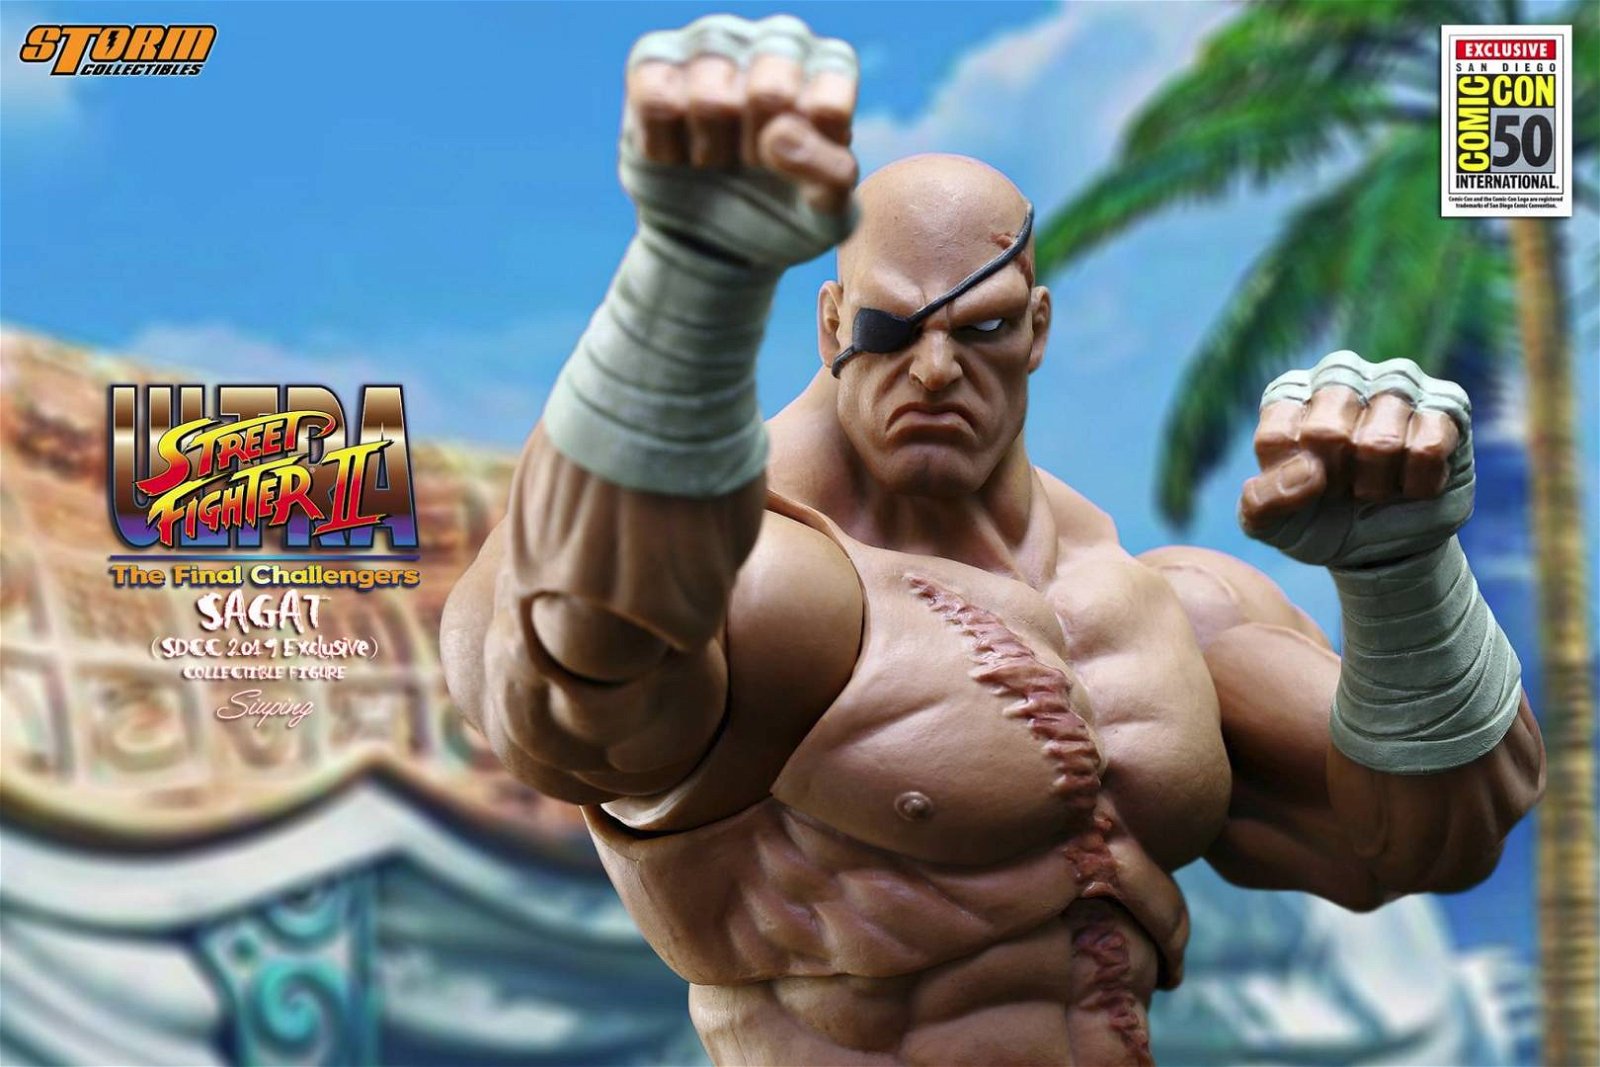 Immagine di Sagat tratto da Ultra Street Fighter II EXCLUSIVE San diego Comic Con 2019